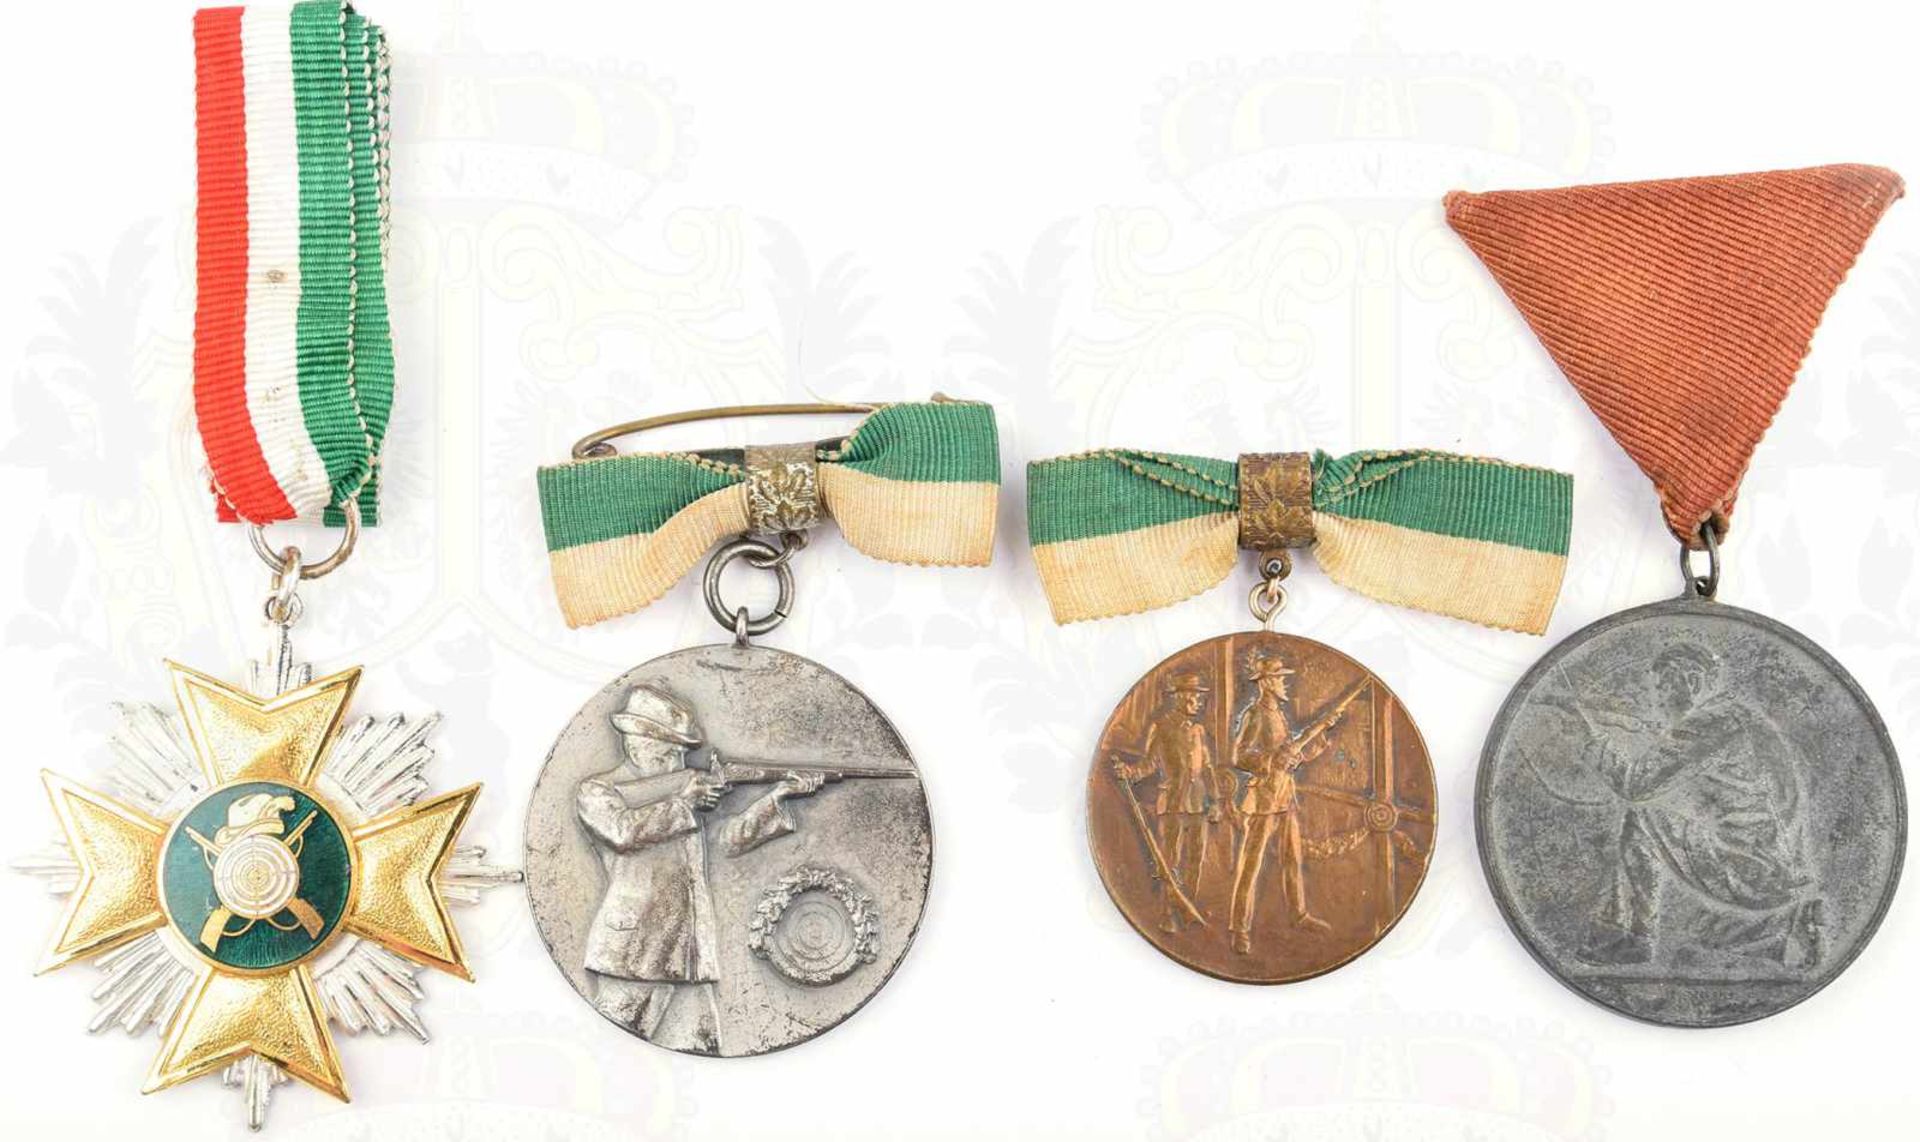 4 SCHÜTZENAUSZEICHNUNGEN: 3 Medaillen, reliefiert, rs. graviert, dabei 1x Silber, Punze „835“, 1x „